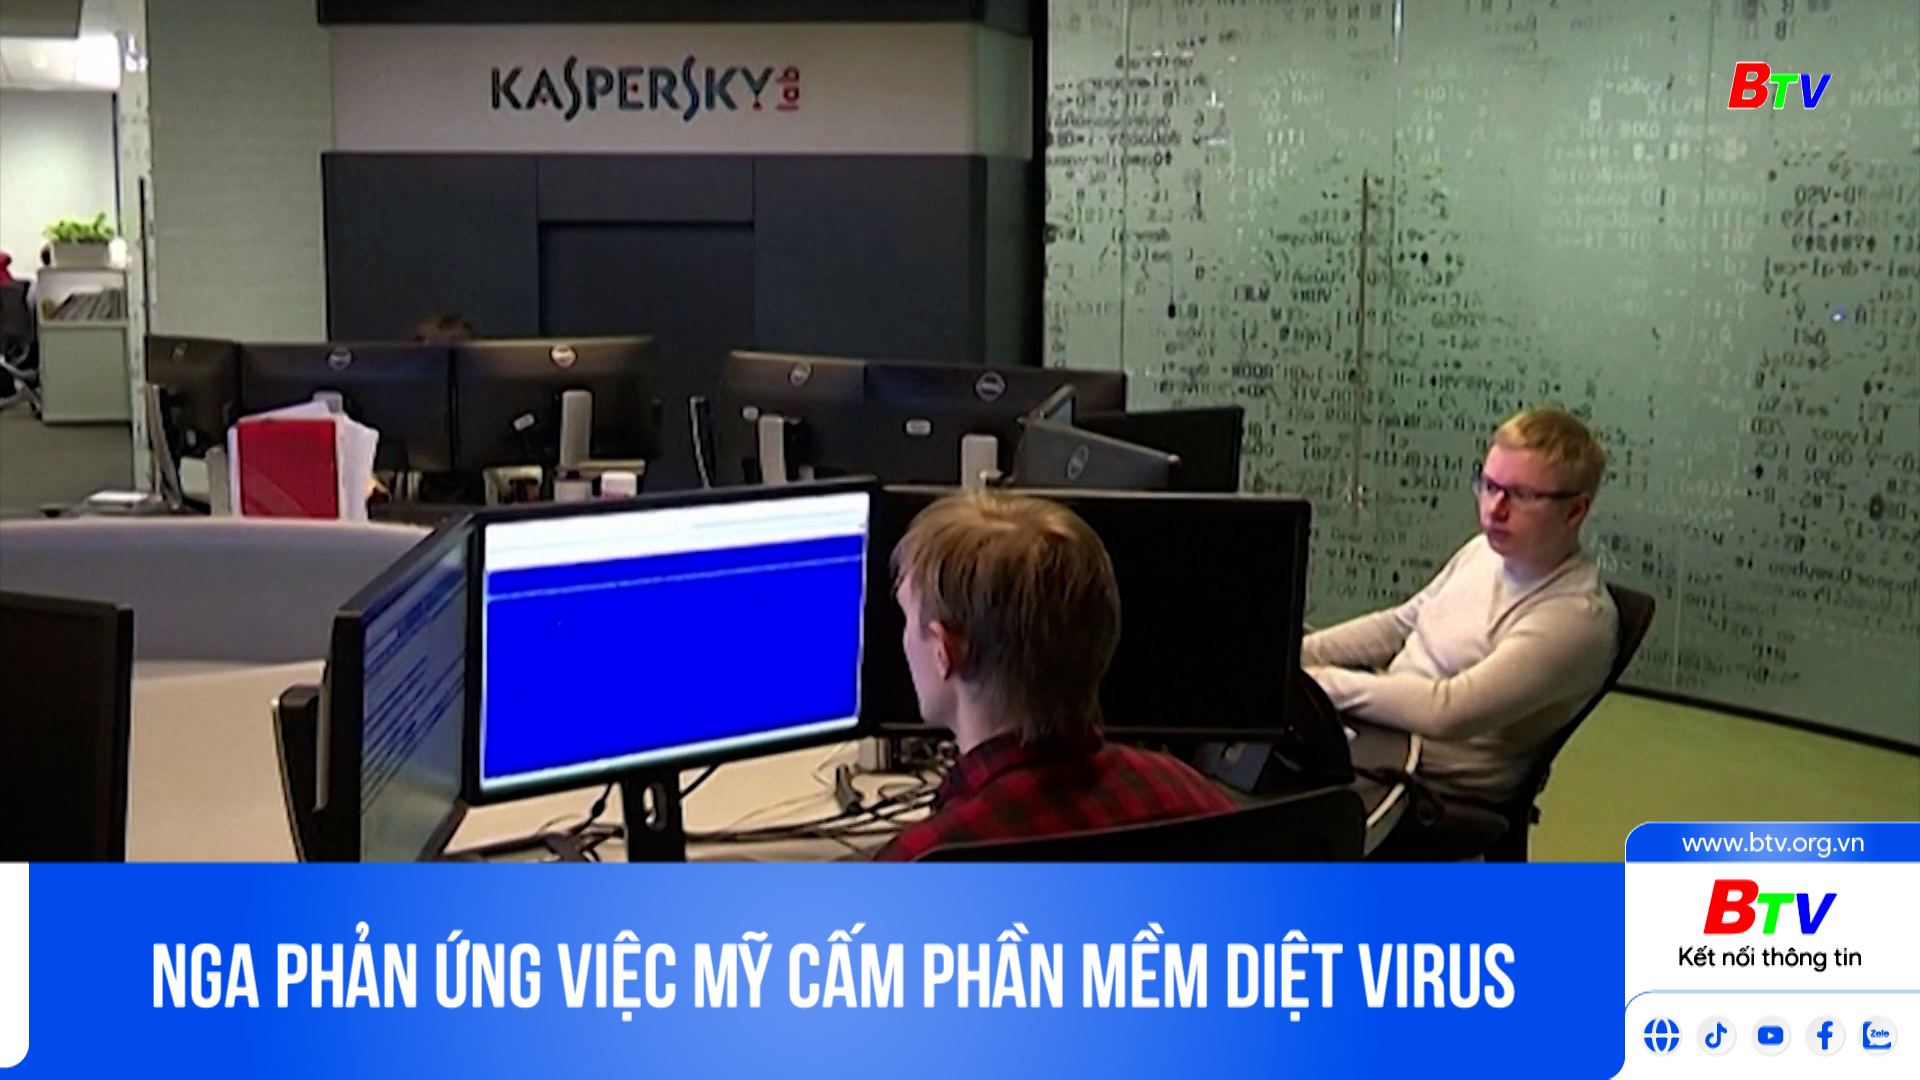 Nga phản ứng việc Mỹ cấm phần mềm diệt virus Kaspersky 